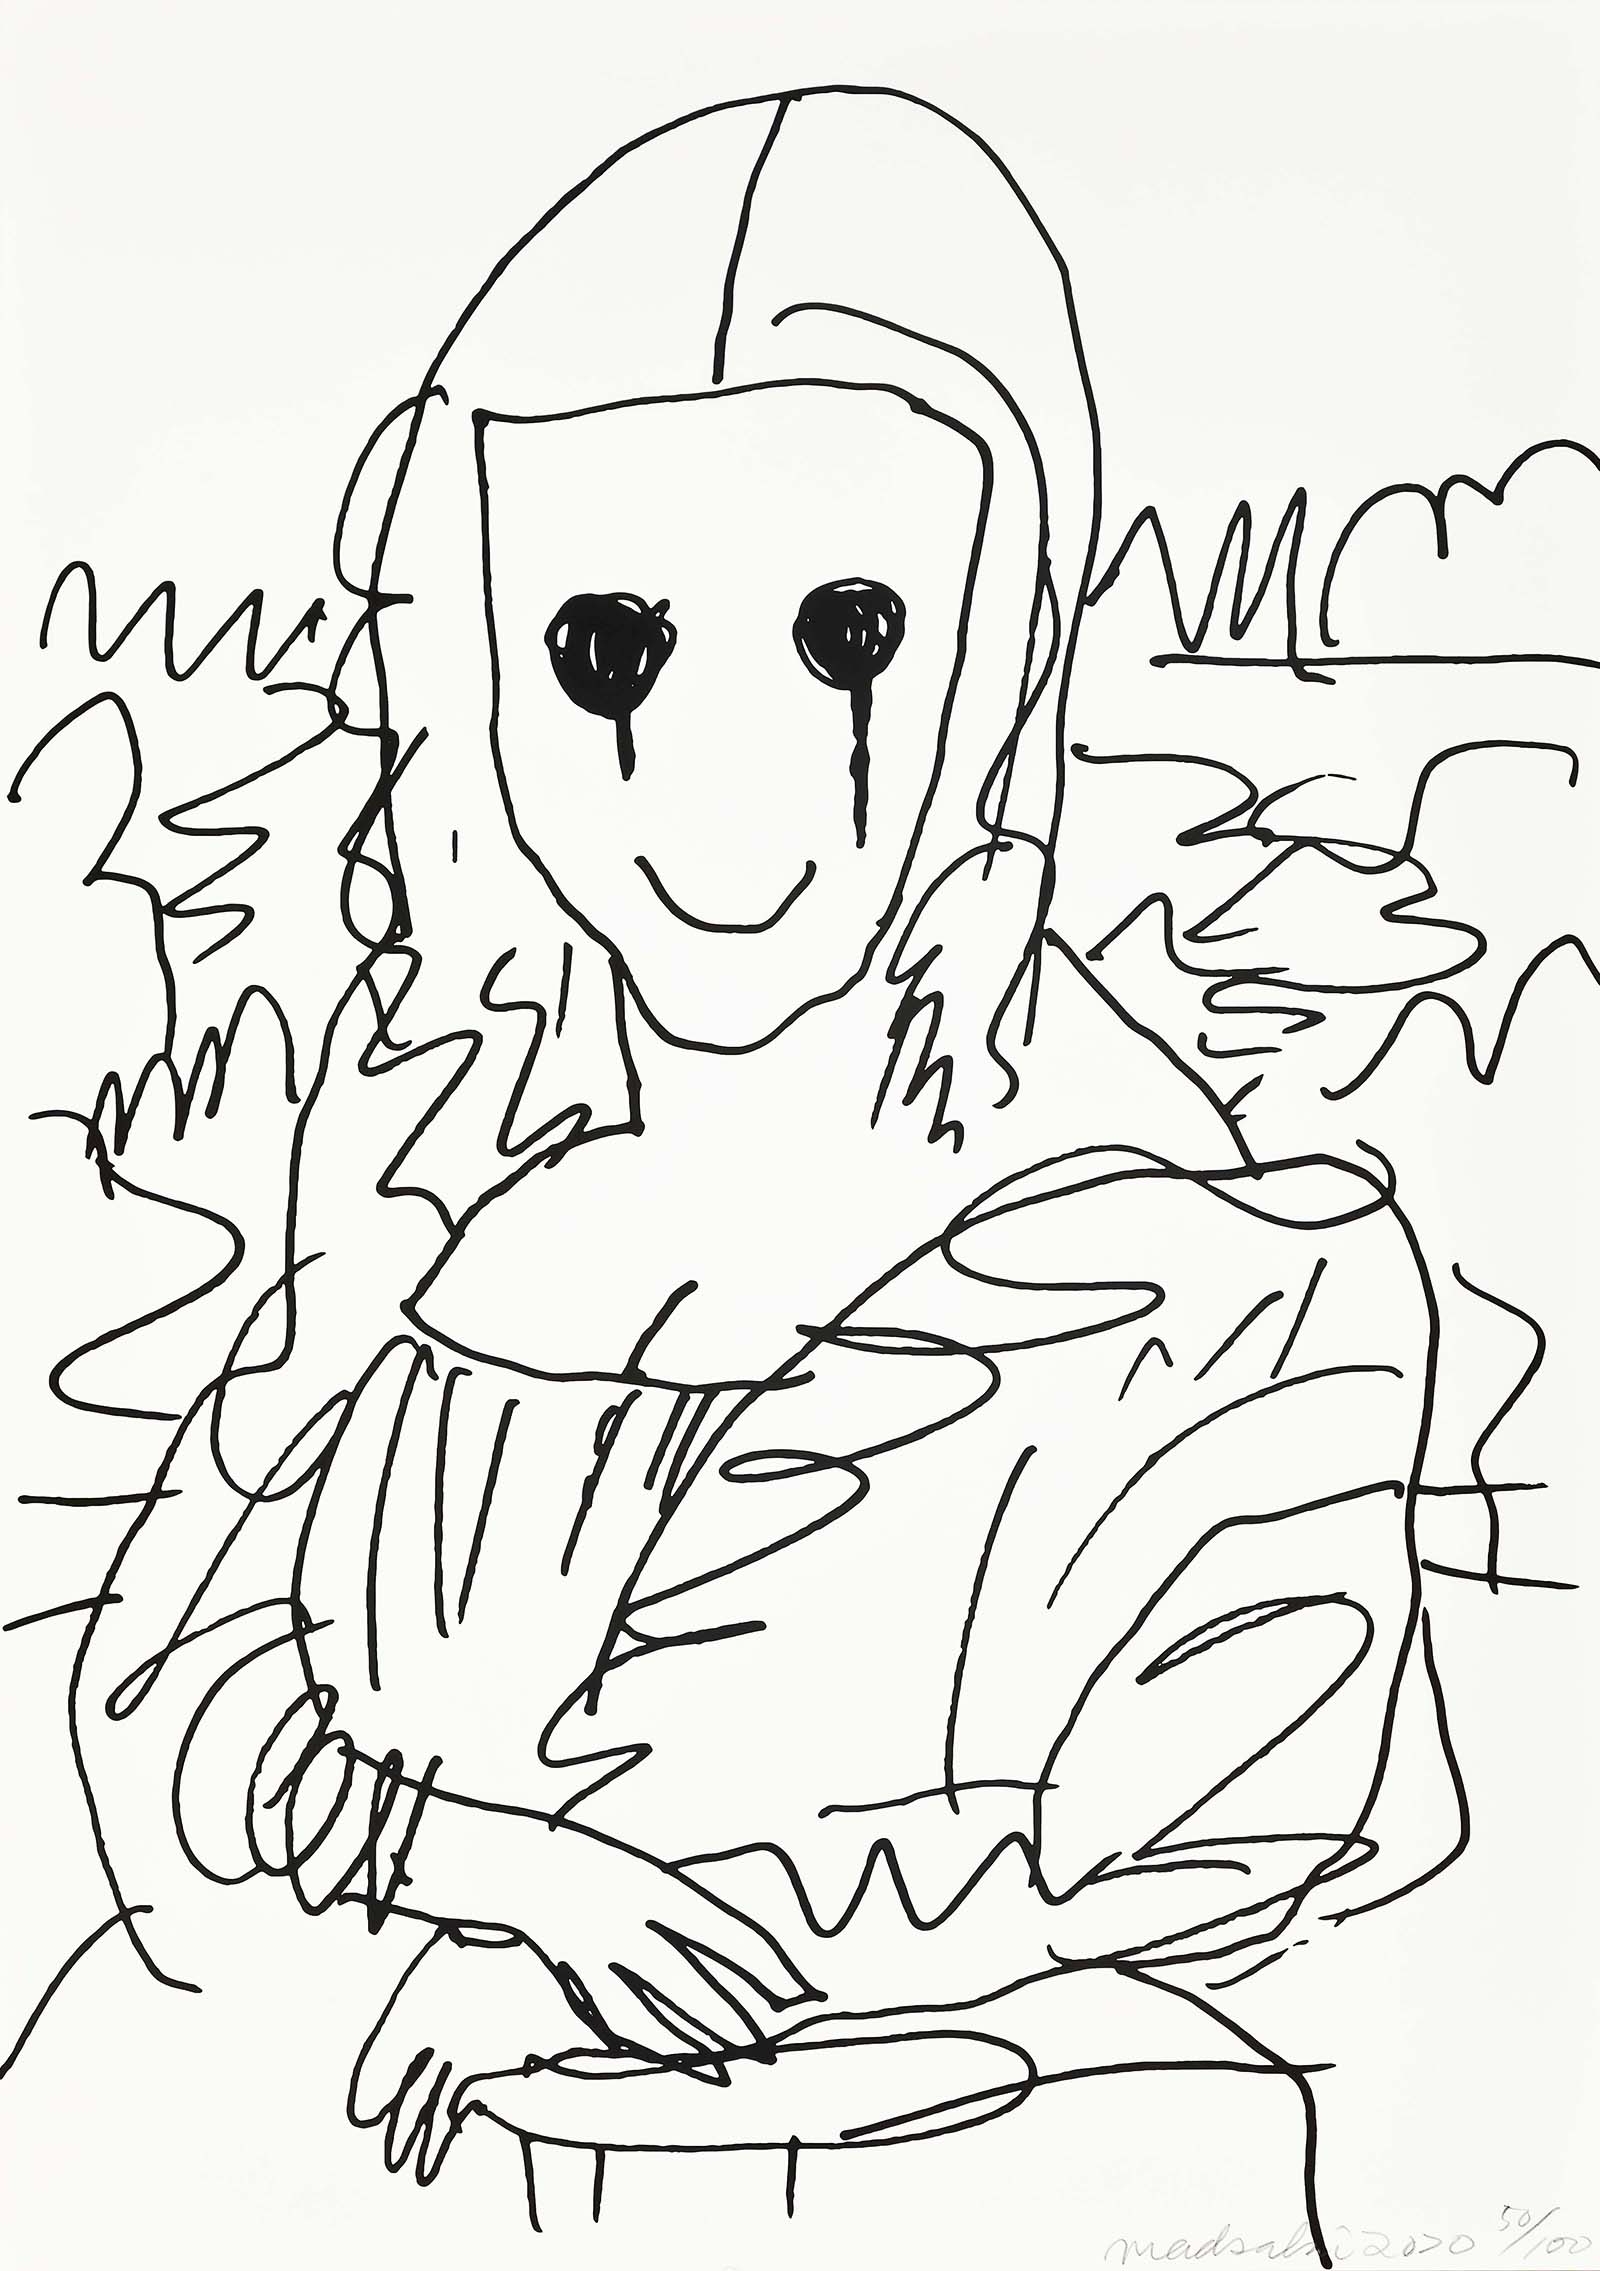 村上隆 版画 Coffee Break Drawing of Mona Lisa